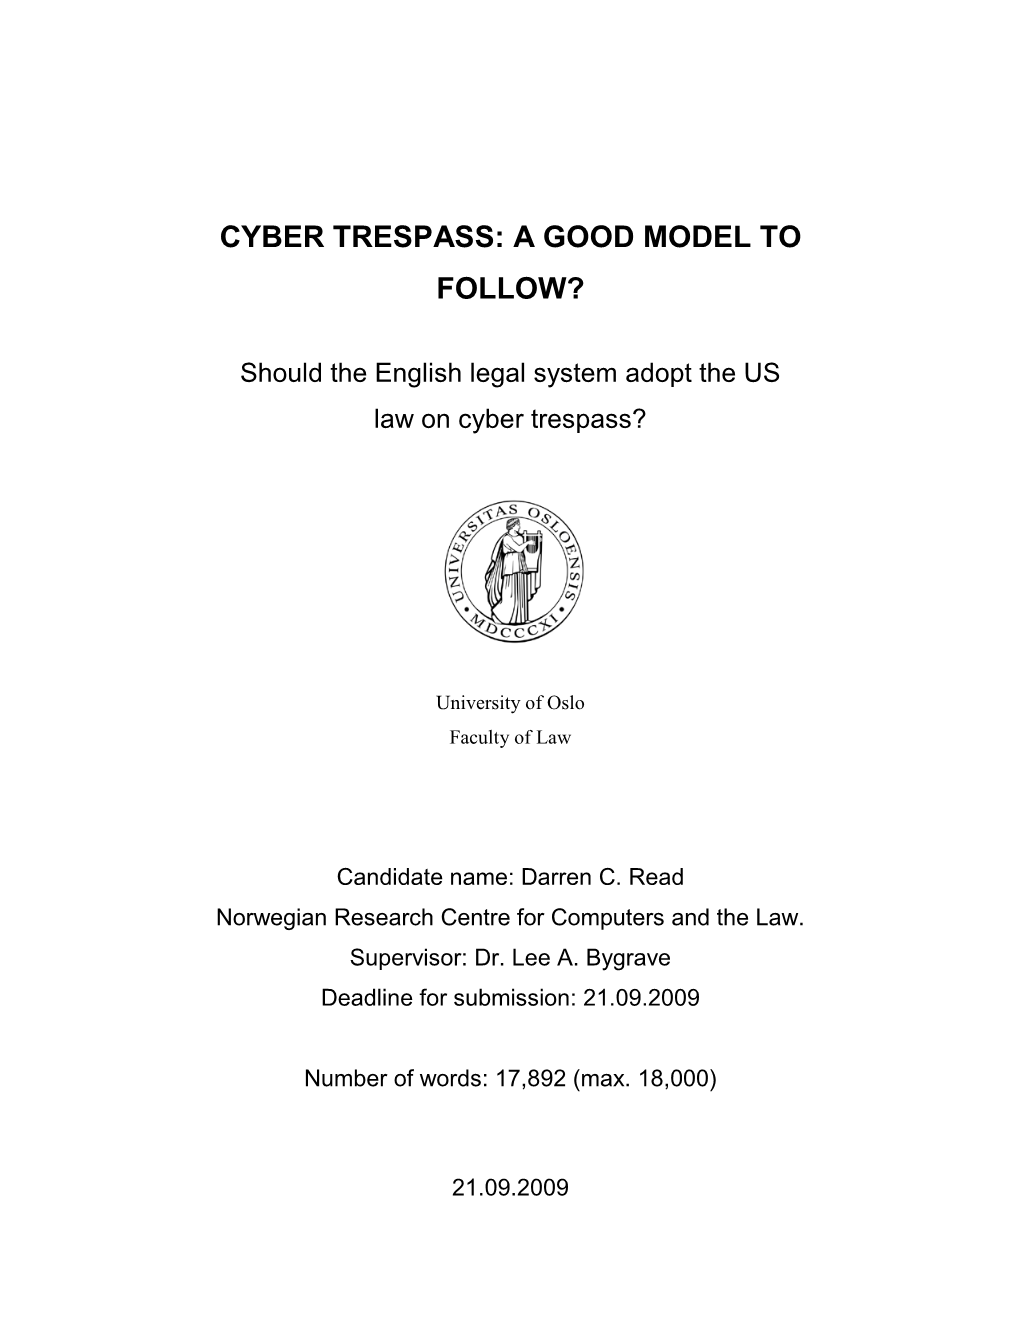 Cyber Trespass: a Good Model to Follow?